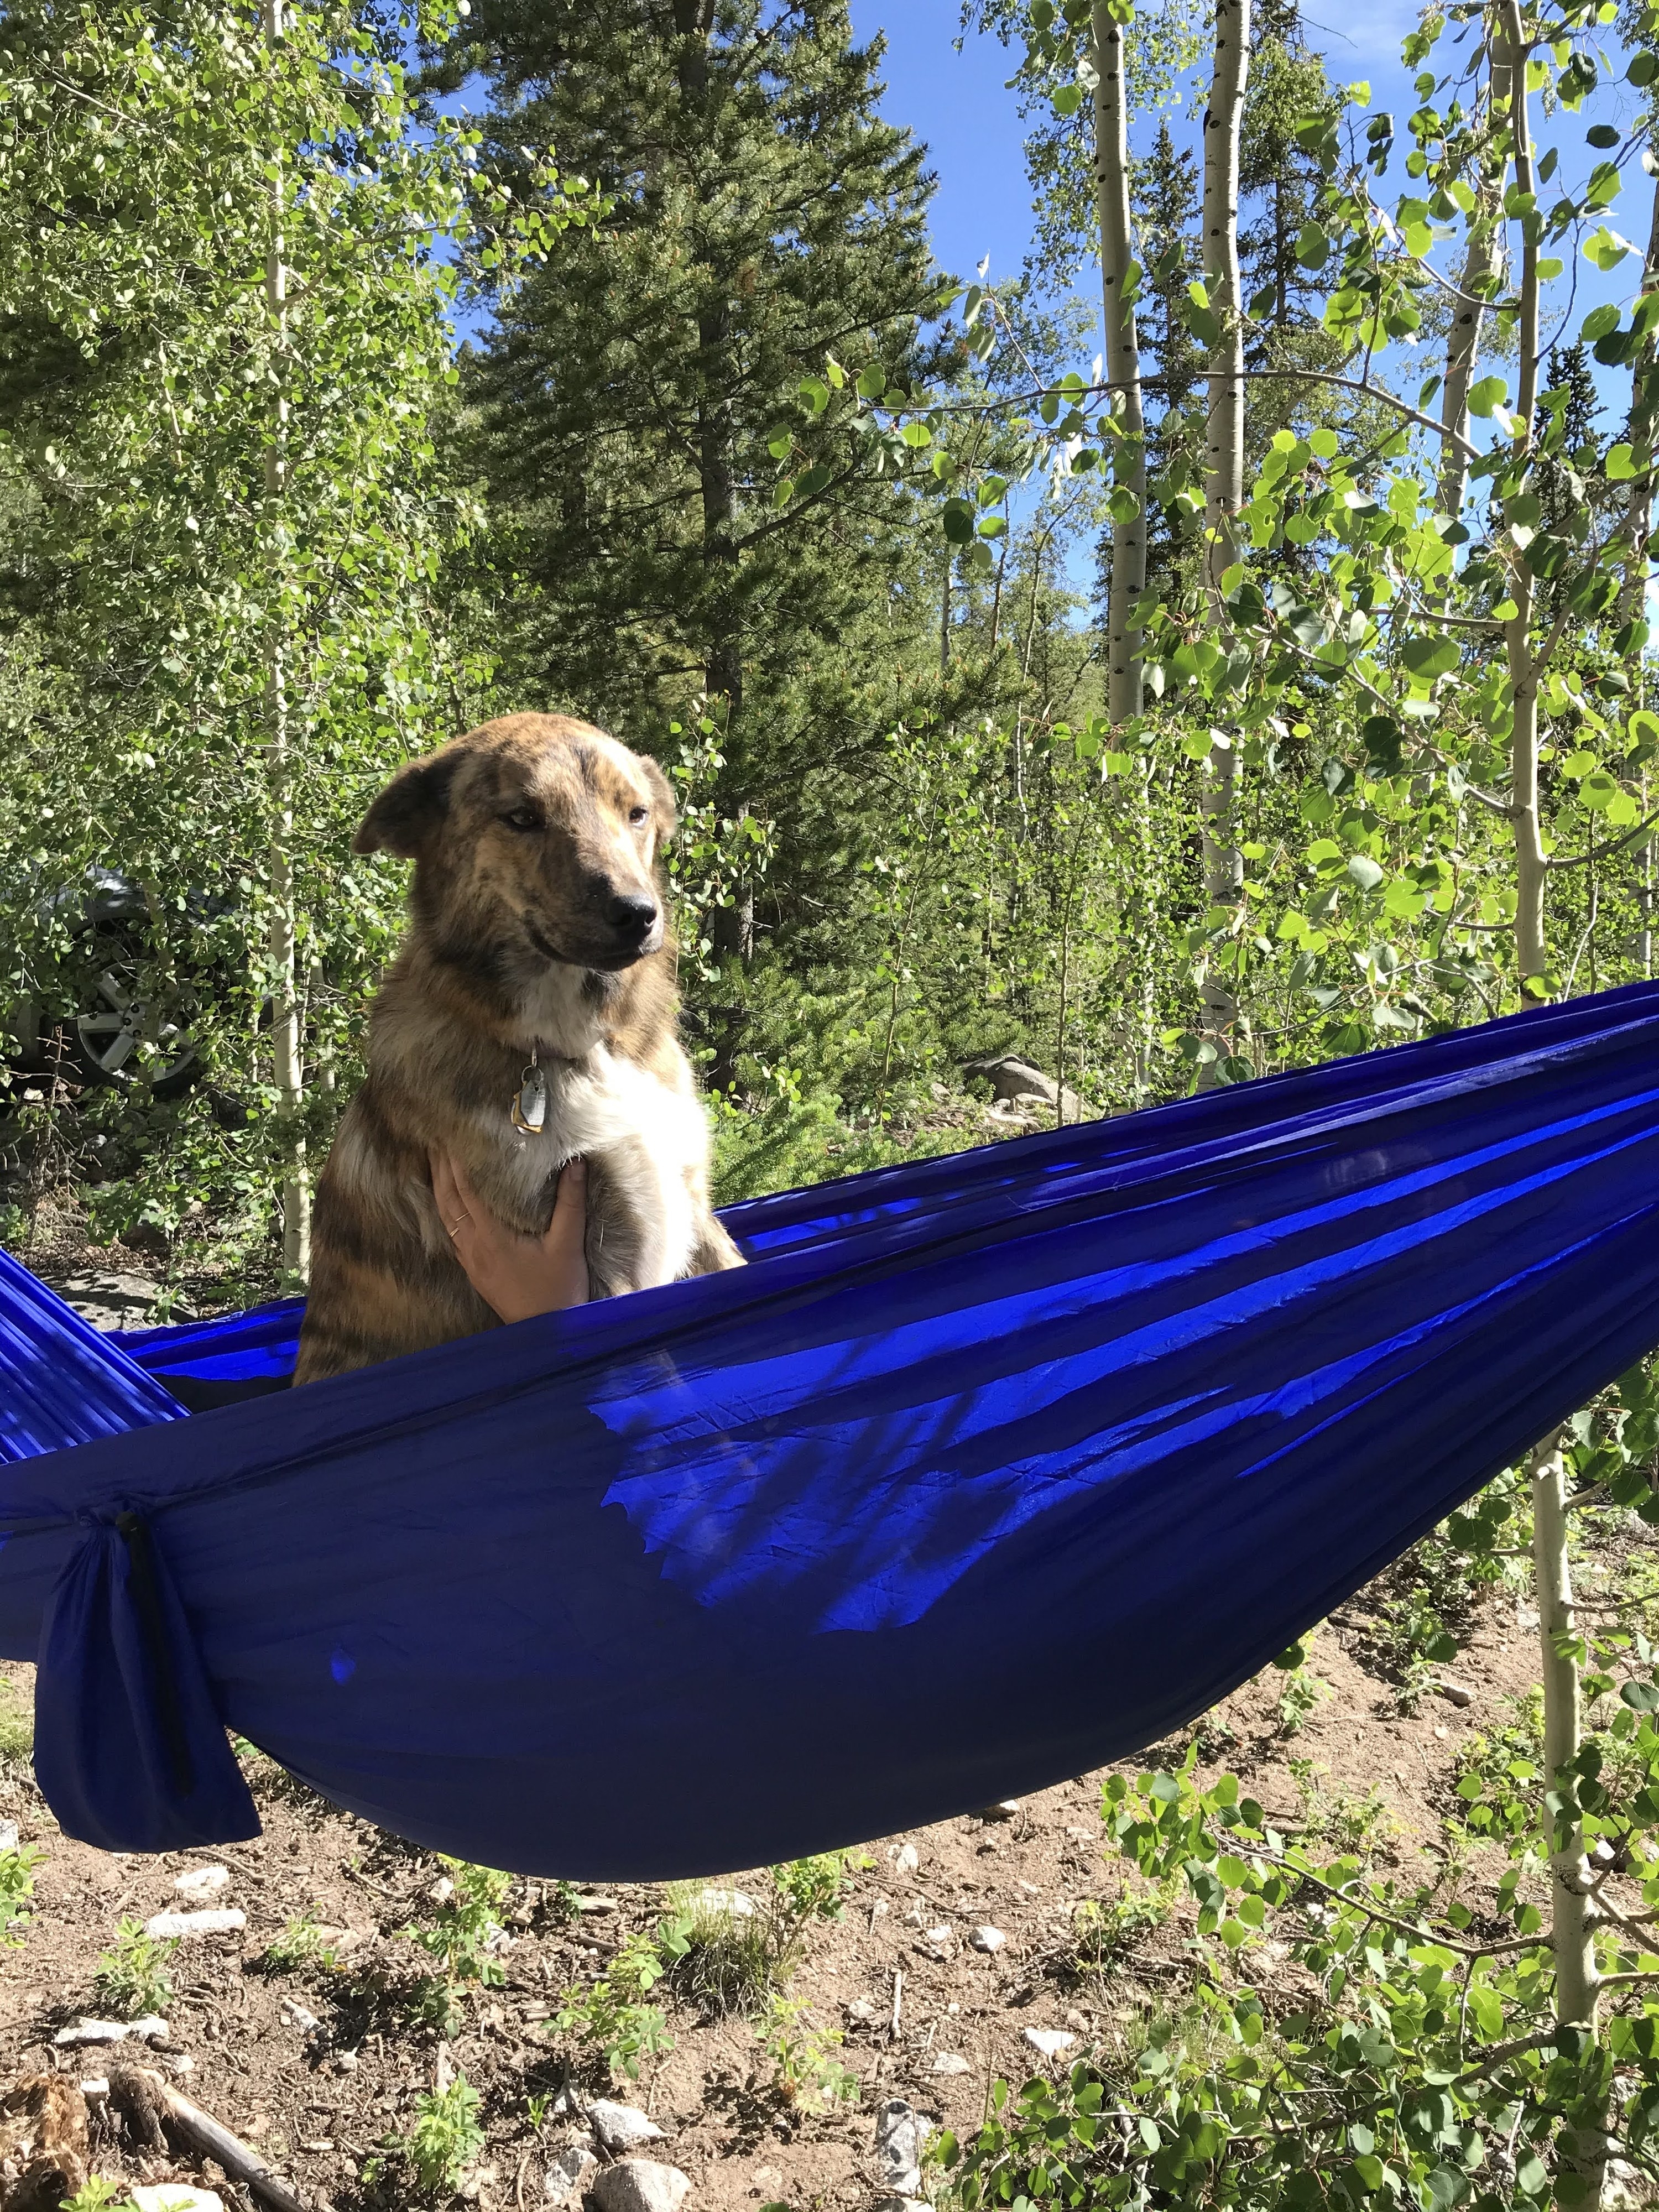 Dog in a hammock